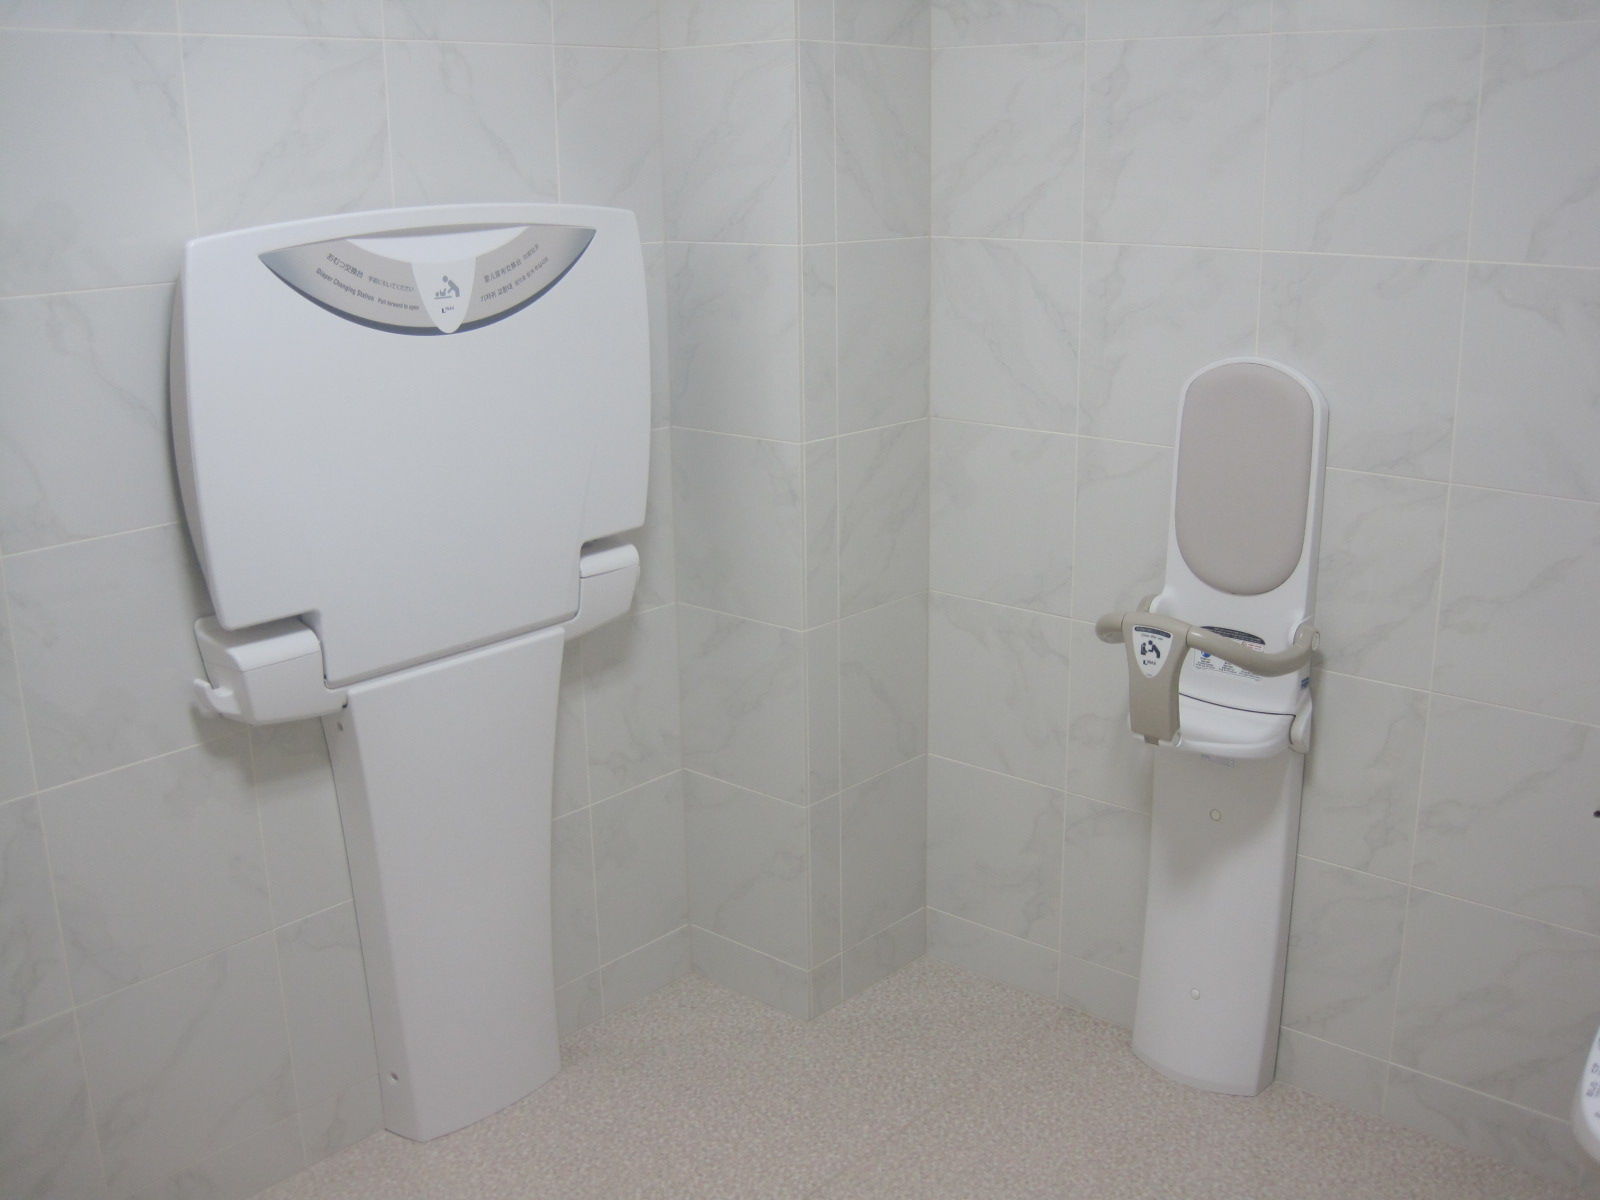 トイレ設備調査日記atosatu 2012年09月11日